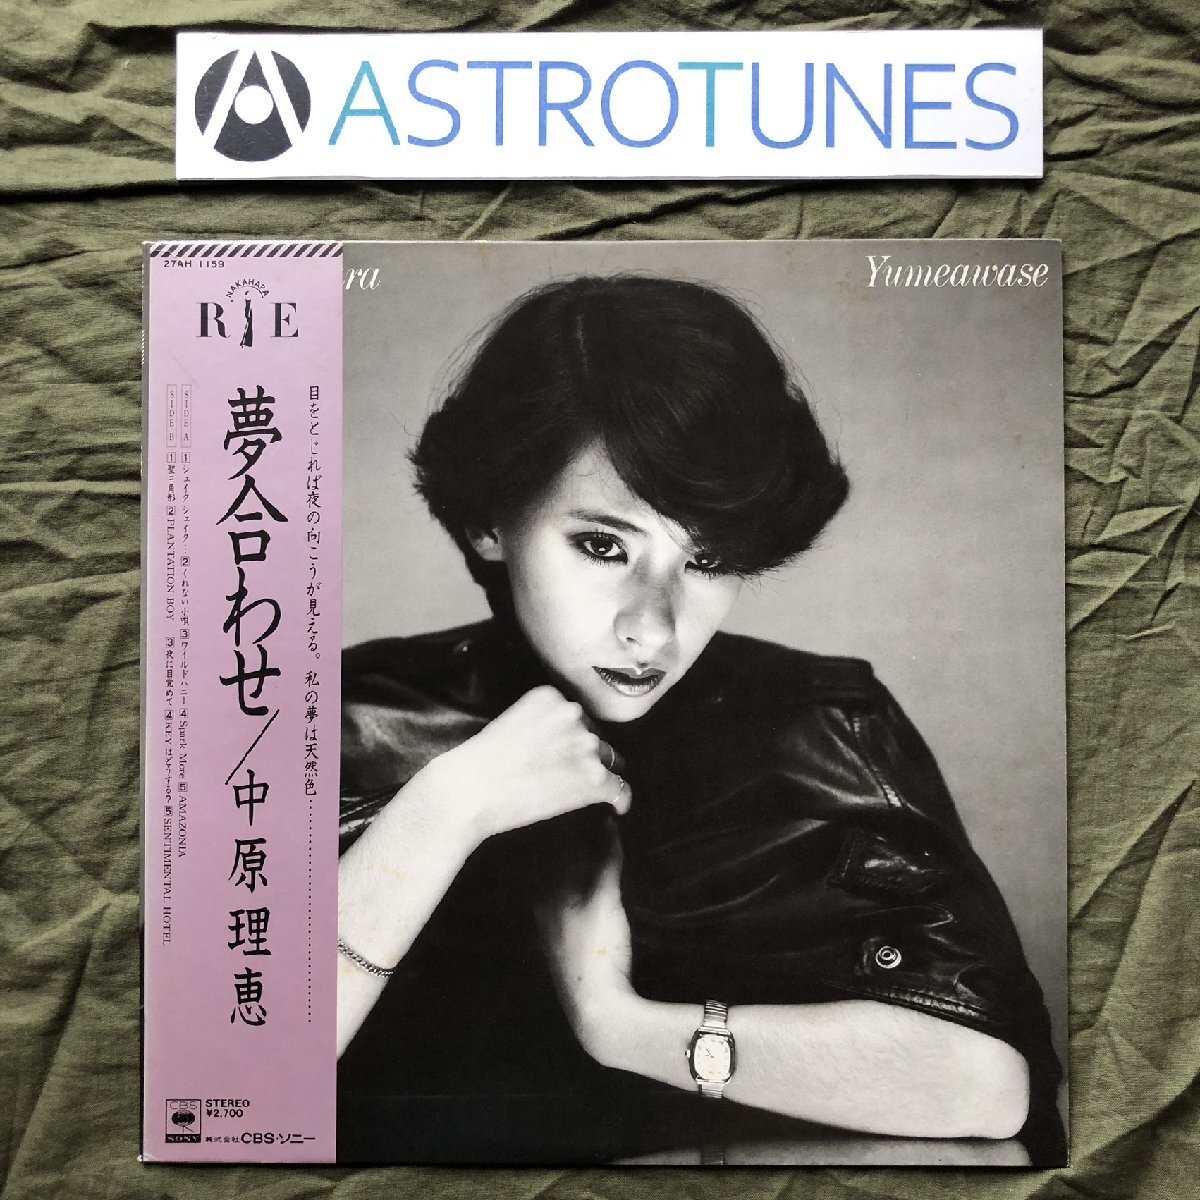 손상되지 않은 아름다운 희귀판 1981년 오리지널 출시판 나카하라 리에 LP 음반 Yumeawase 오비 포함 J-Pop 사진 포함, 바위, 아저씨, 나행, 다른 사람